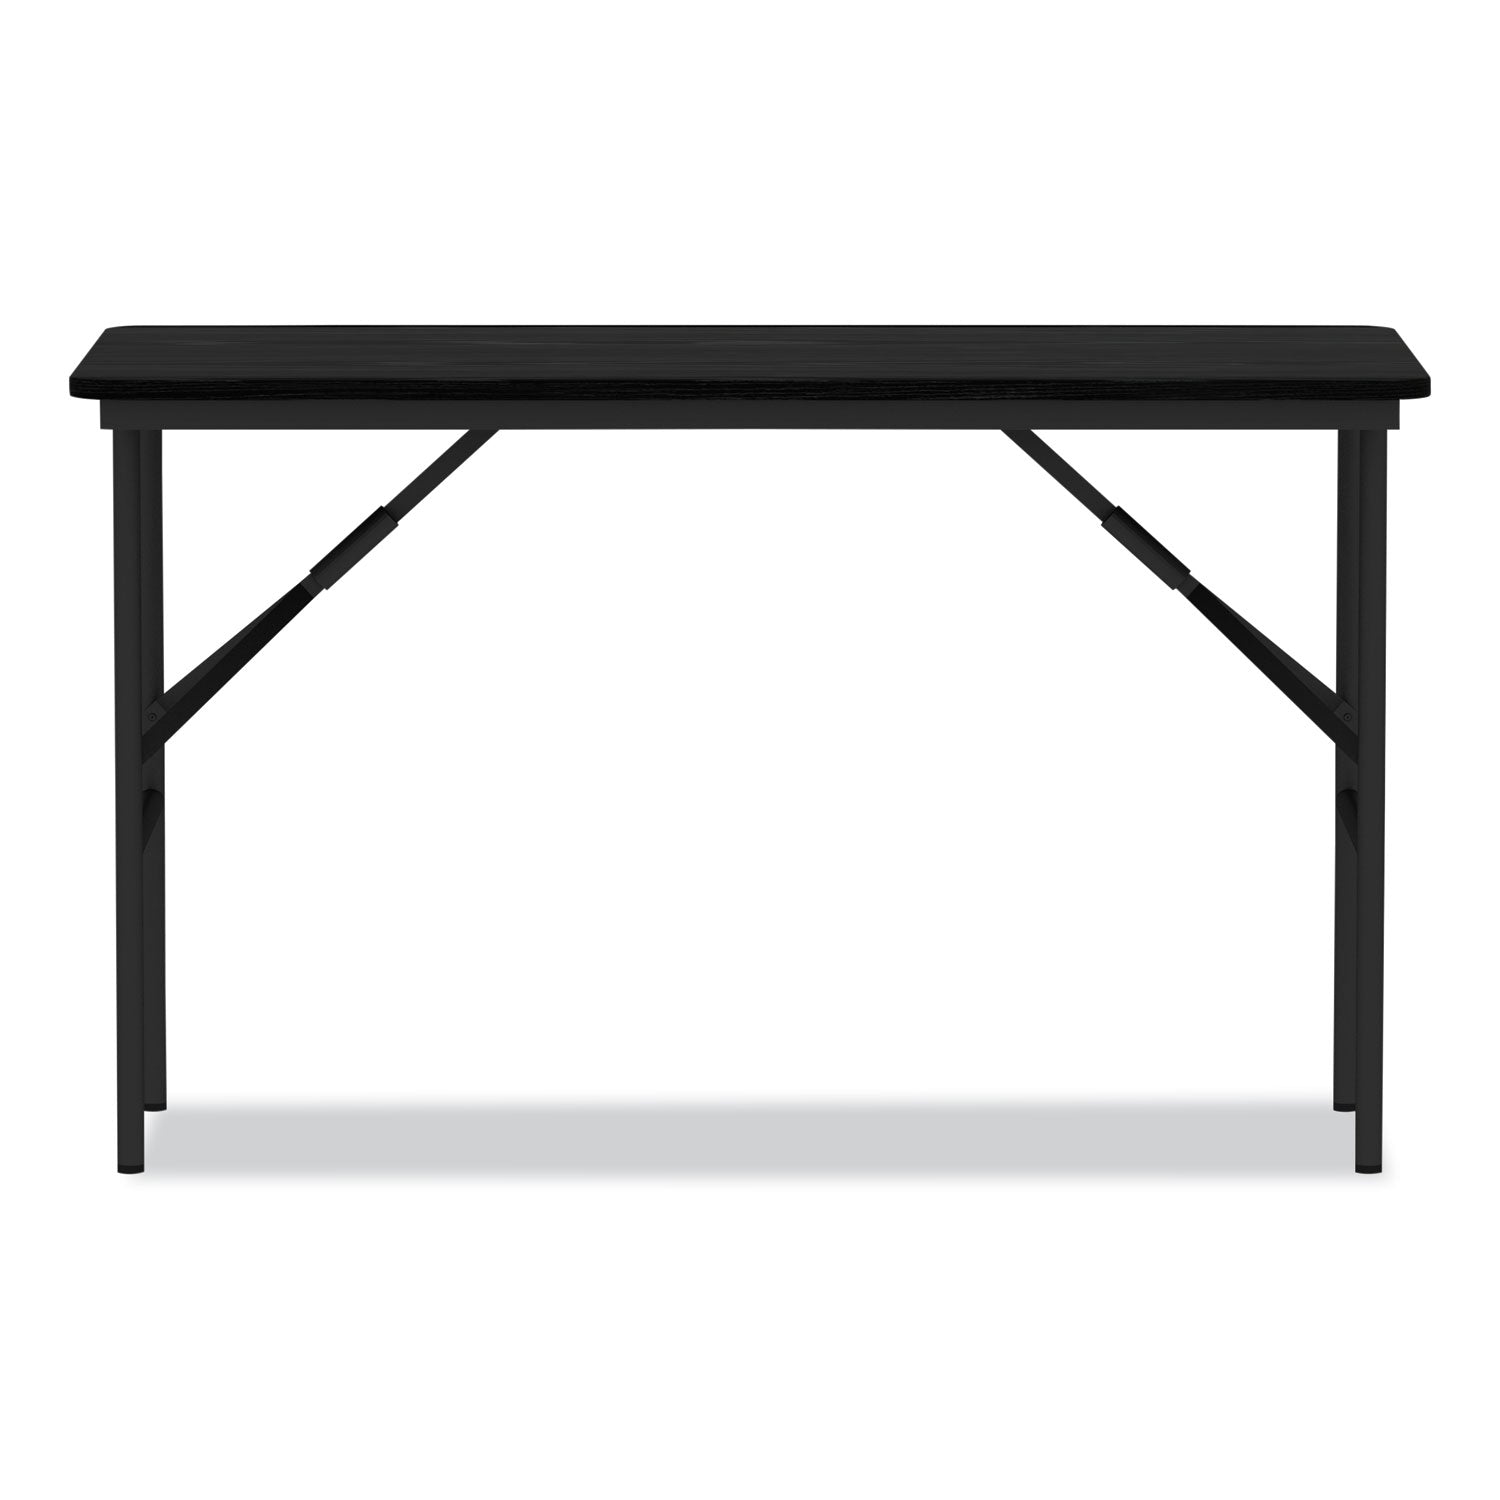 wood-folding-table-rectangular-48w-x-2388d-x-29h-black_aleft724824bk - 2